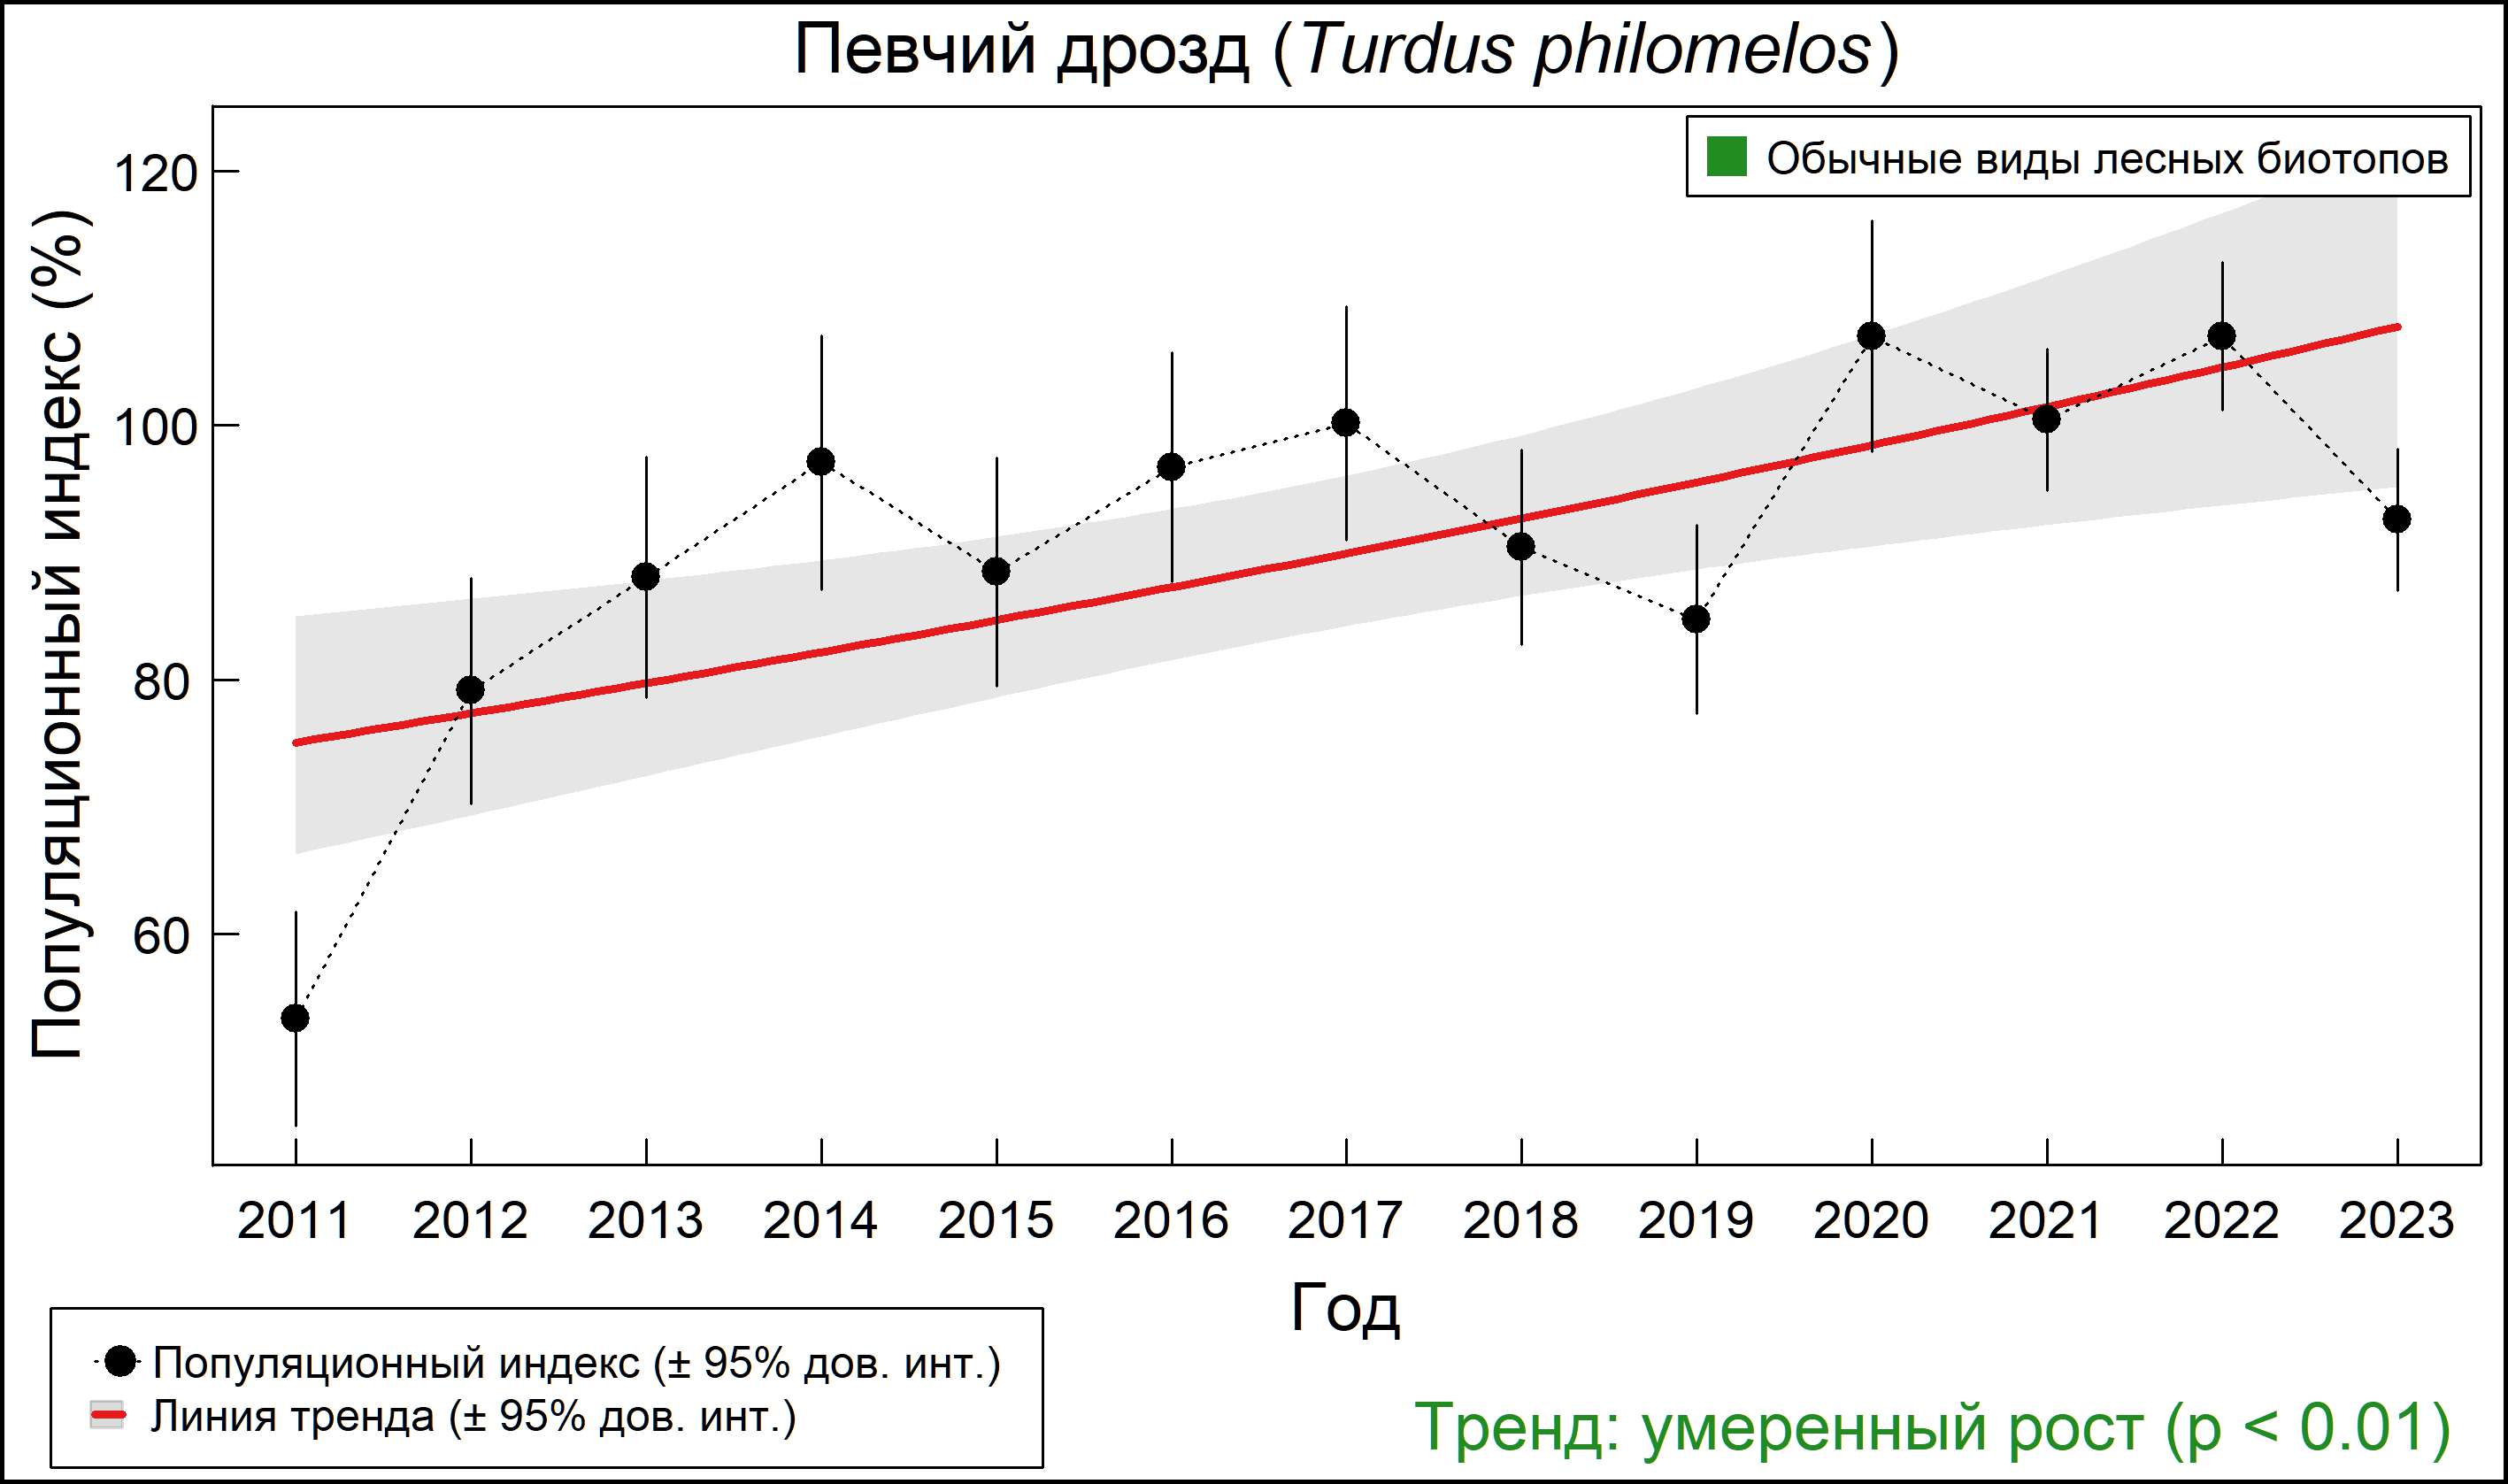 Певчий дрозд (Turdus philomelos). Динамика численности по данным мониторинга в Москве и Московской области